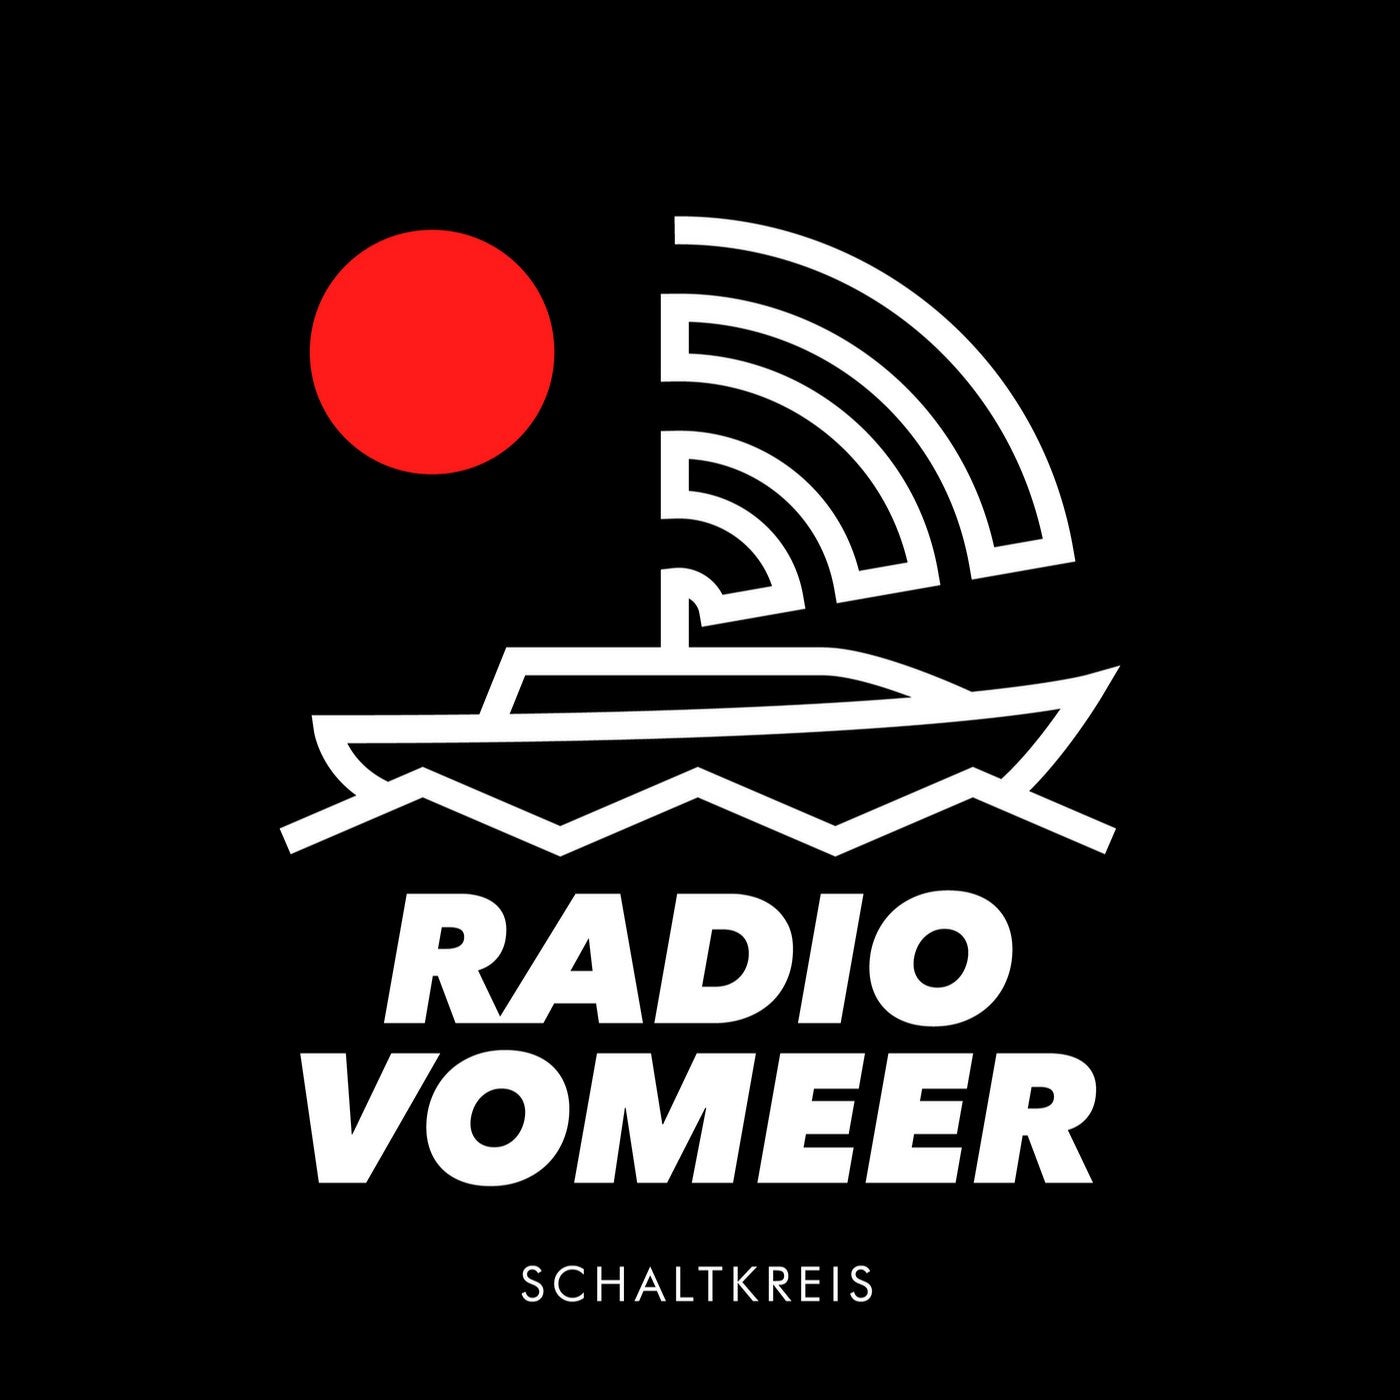 Radio Vomeer